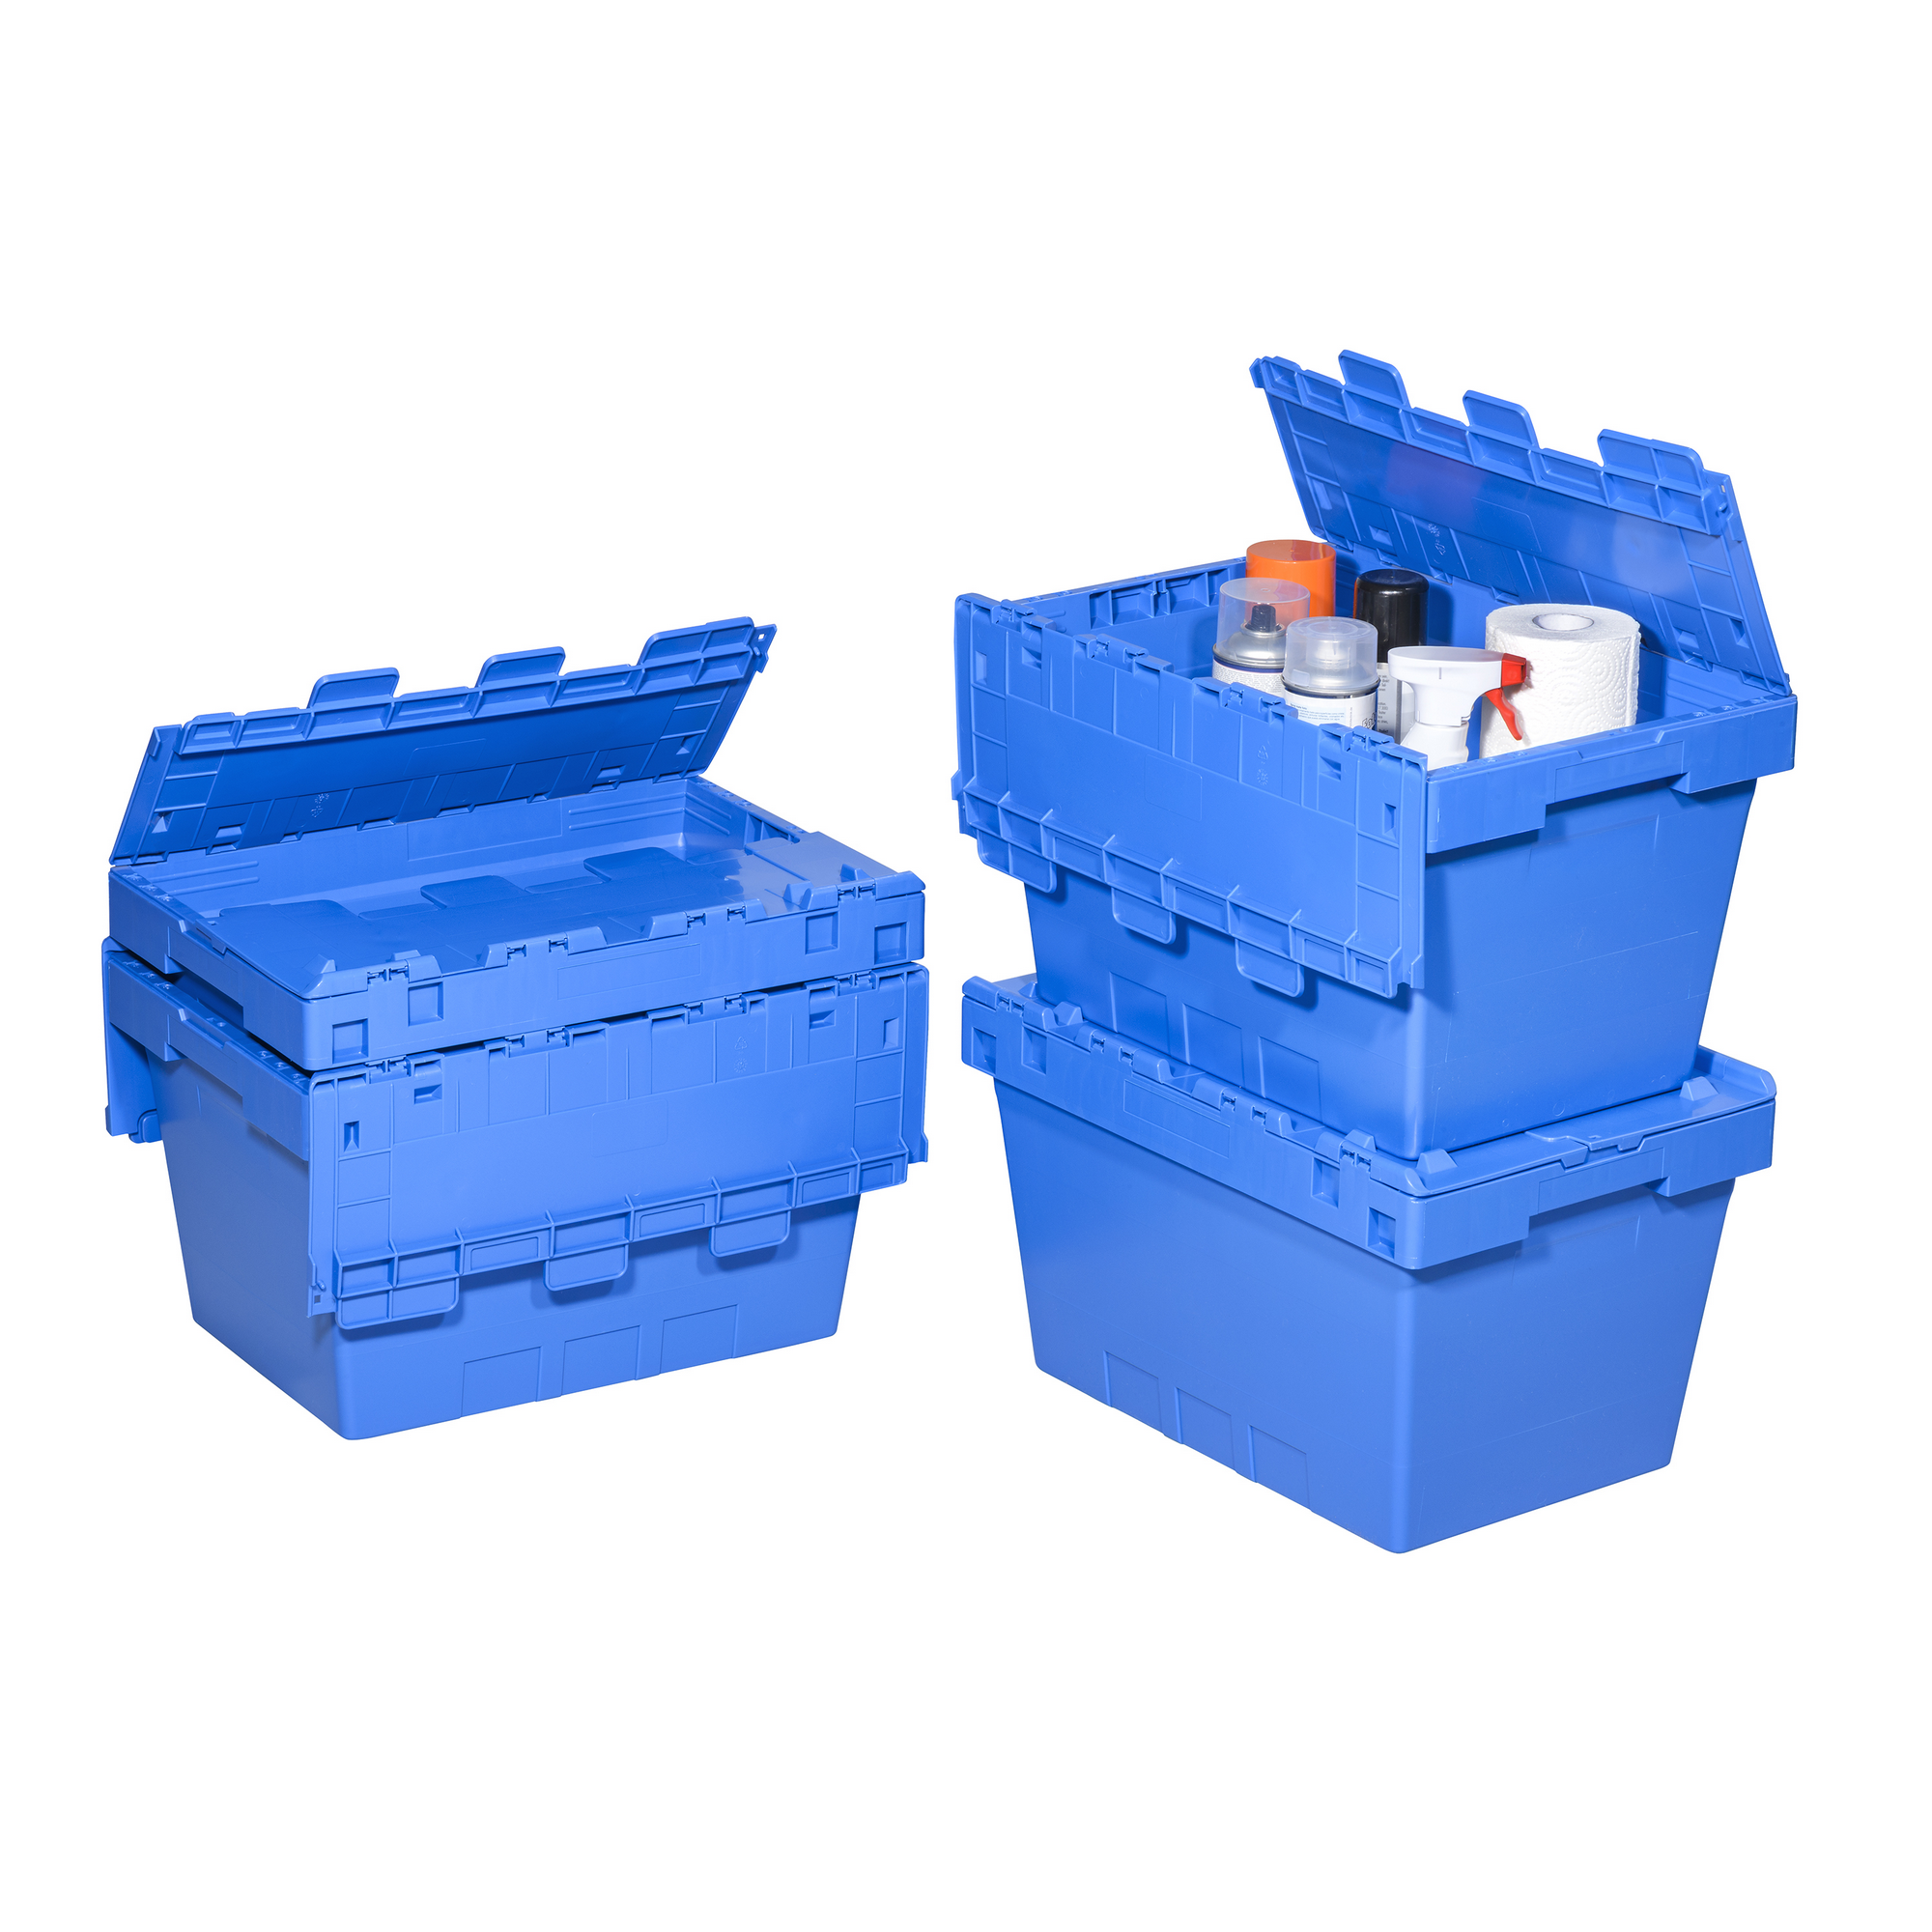 Klappdeckelbox 'ProfiPlus CrocoLid' 49 x 33 x 30 cm blau + product picture